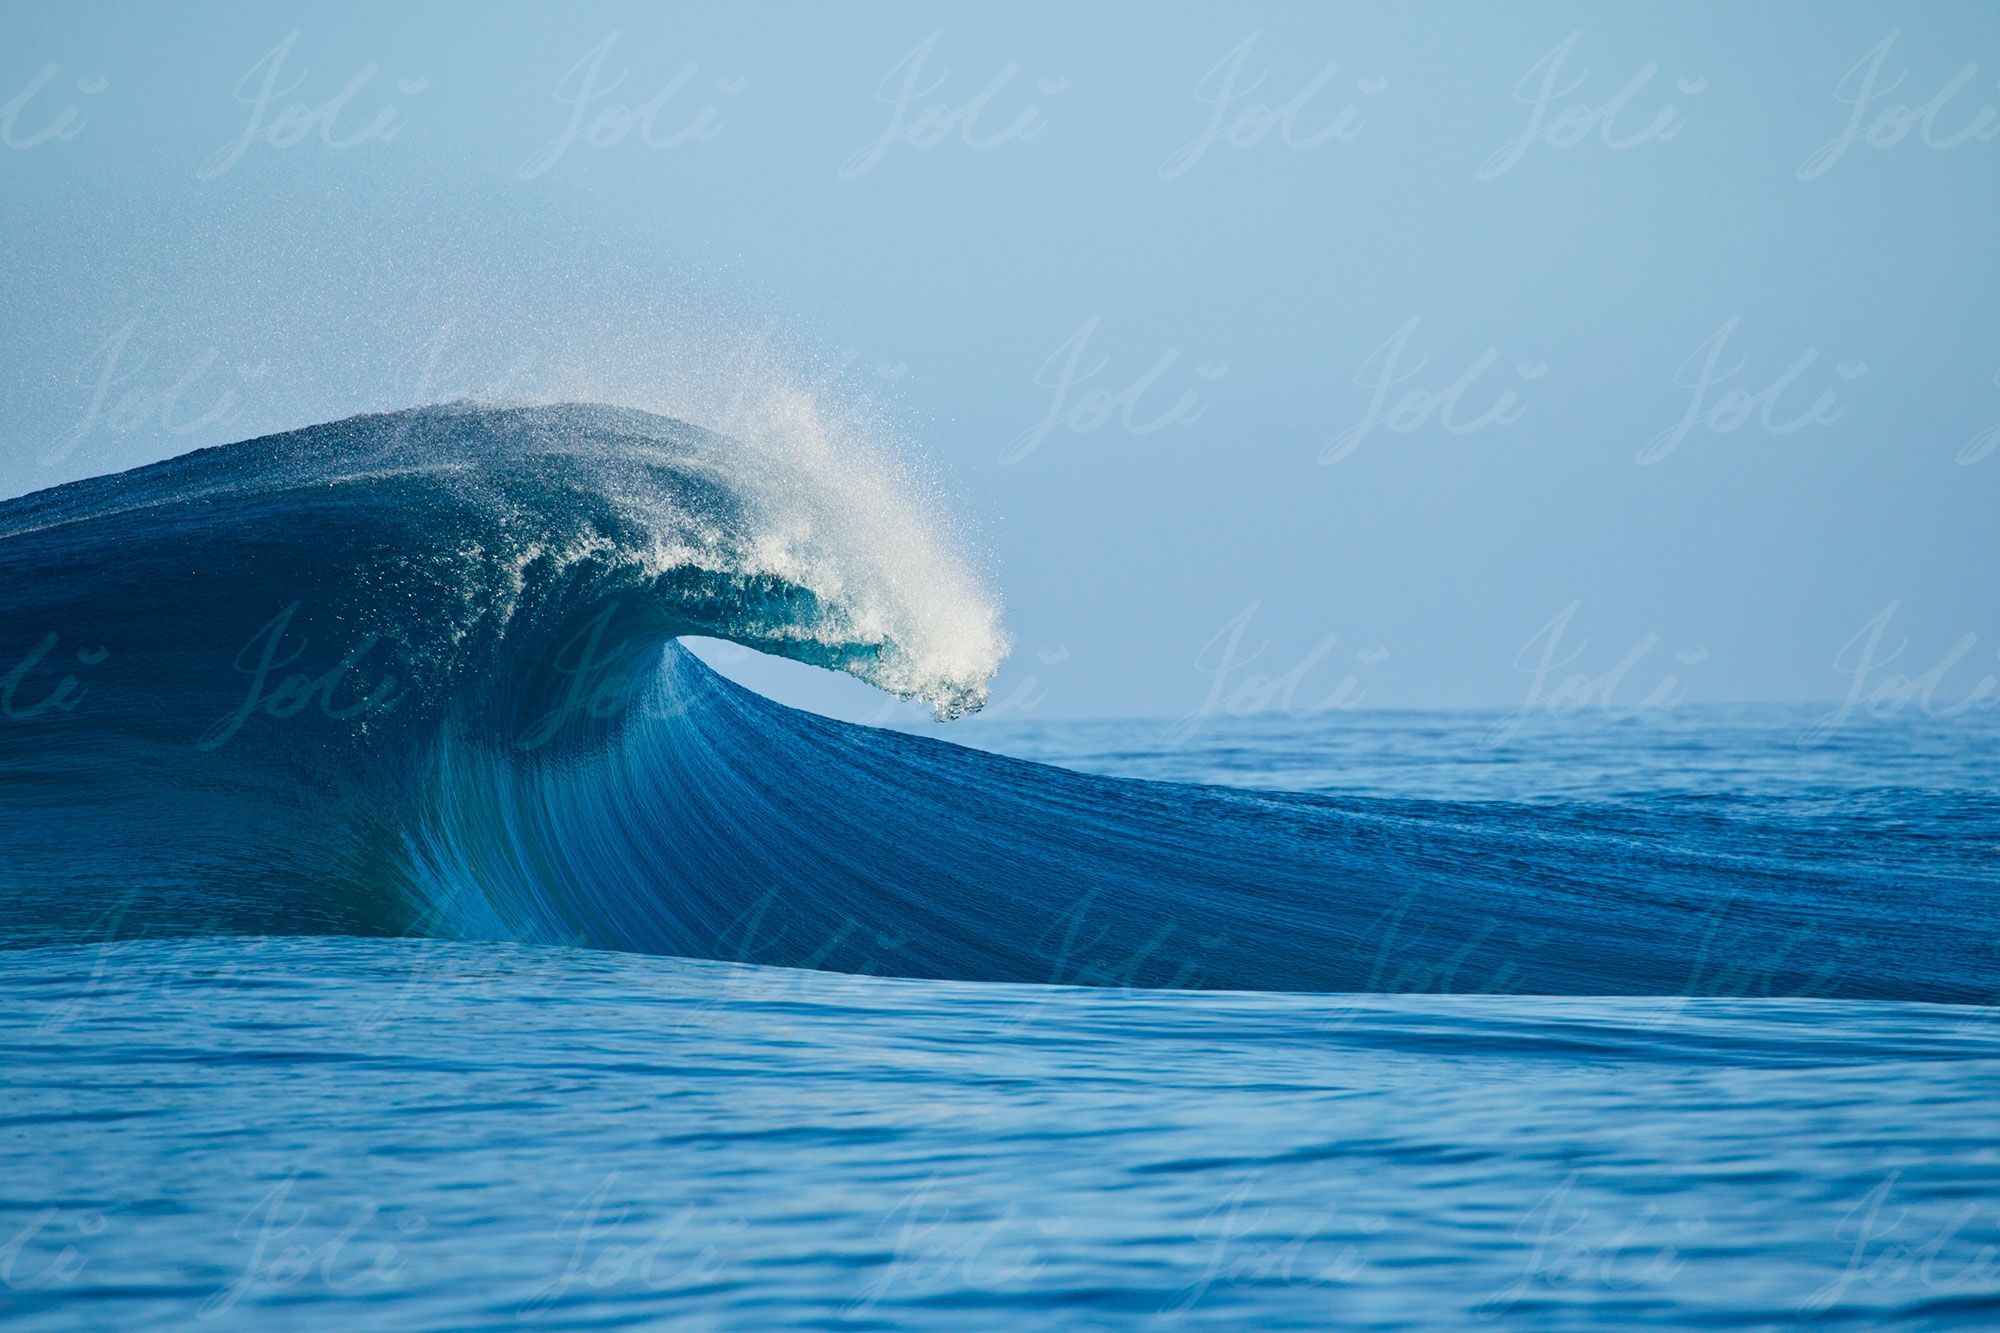 Breaking Wave Joli TW9544, Teahupoo, Tahiti wave. $110 image usage fee